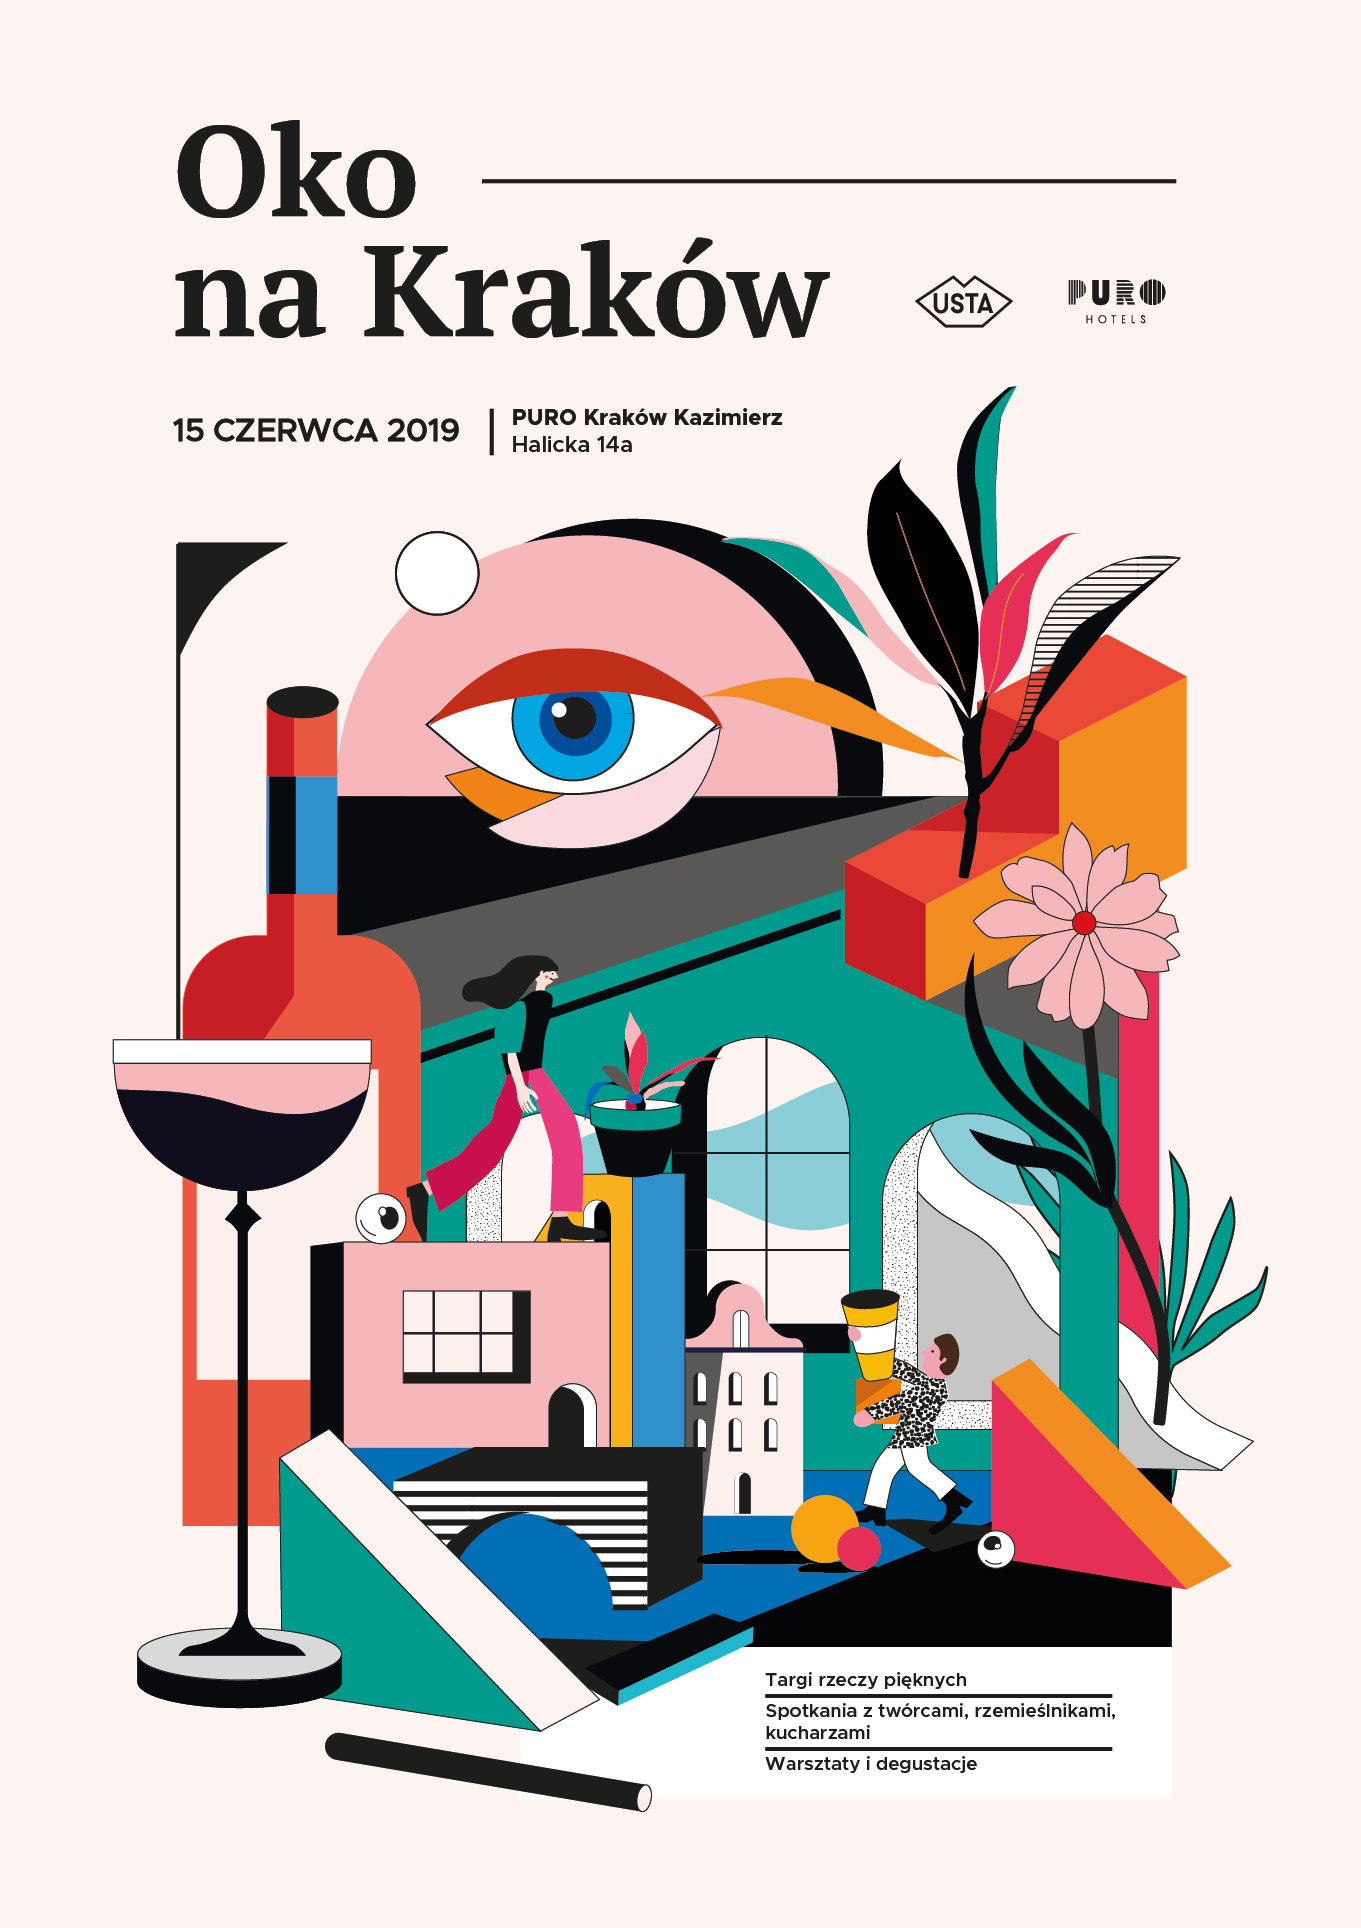 Oko na Kraków